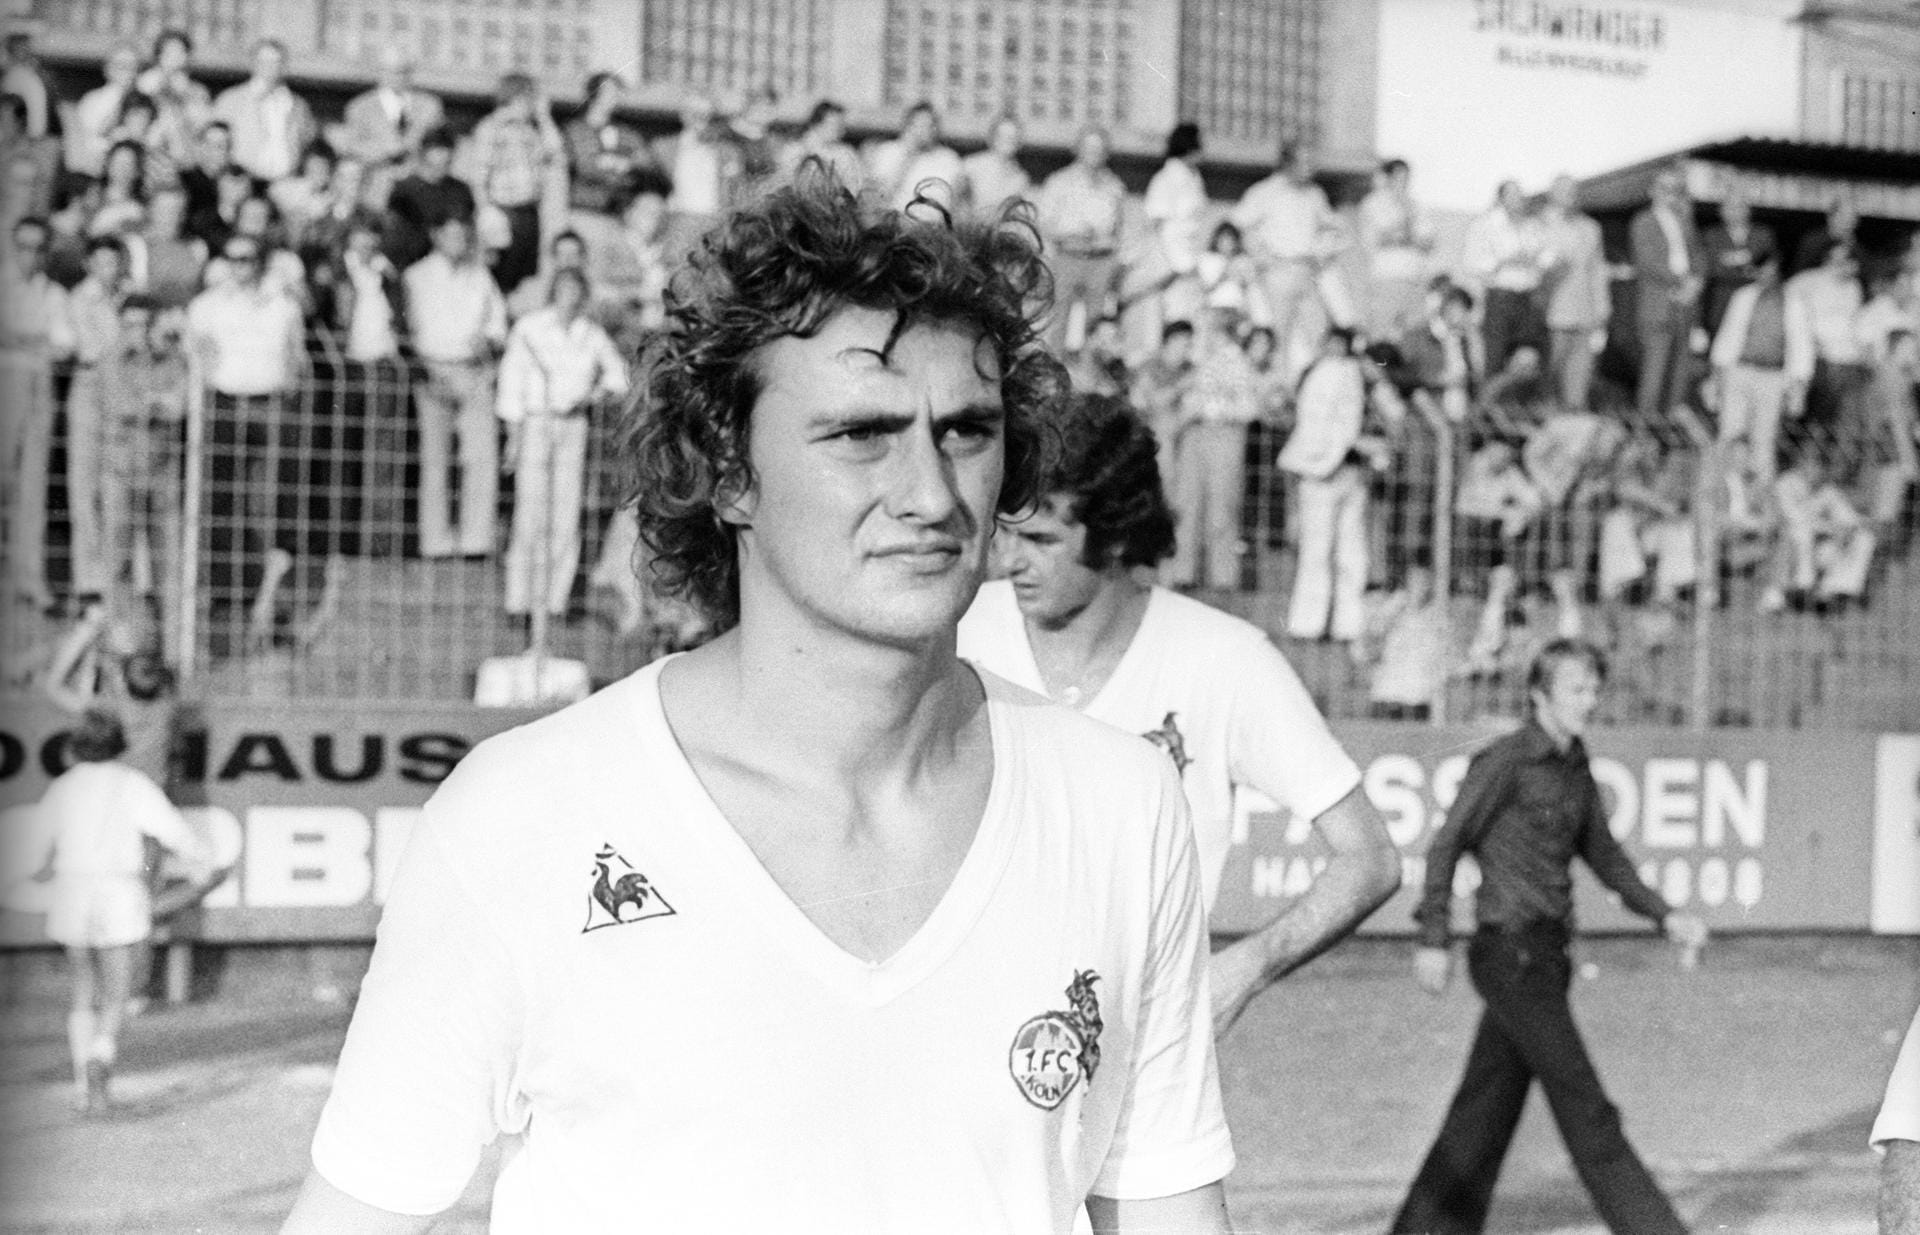 Dieter Müller: Der Stürmer war von 1973 bis 1981 beim 1. FC Köln unter Vertrag. Mit dem Klub wurde er ein Mal Deutscher Meister und zweimal DFB-Pokalsieger. 1977 erzielte er gegen Werder Bremen sogar Treffer und stellte einen bis heute ungebrochenen Bundesliga-Rekord auf. Heute leitet er eine Fußballschule in der Nähe von Frankfurt.